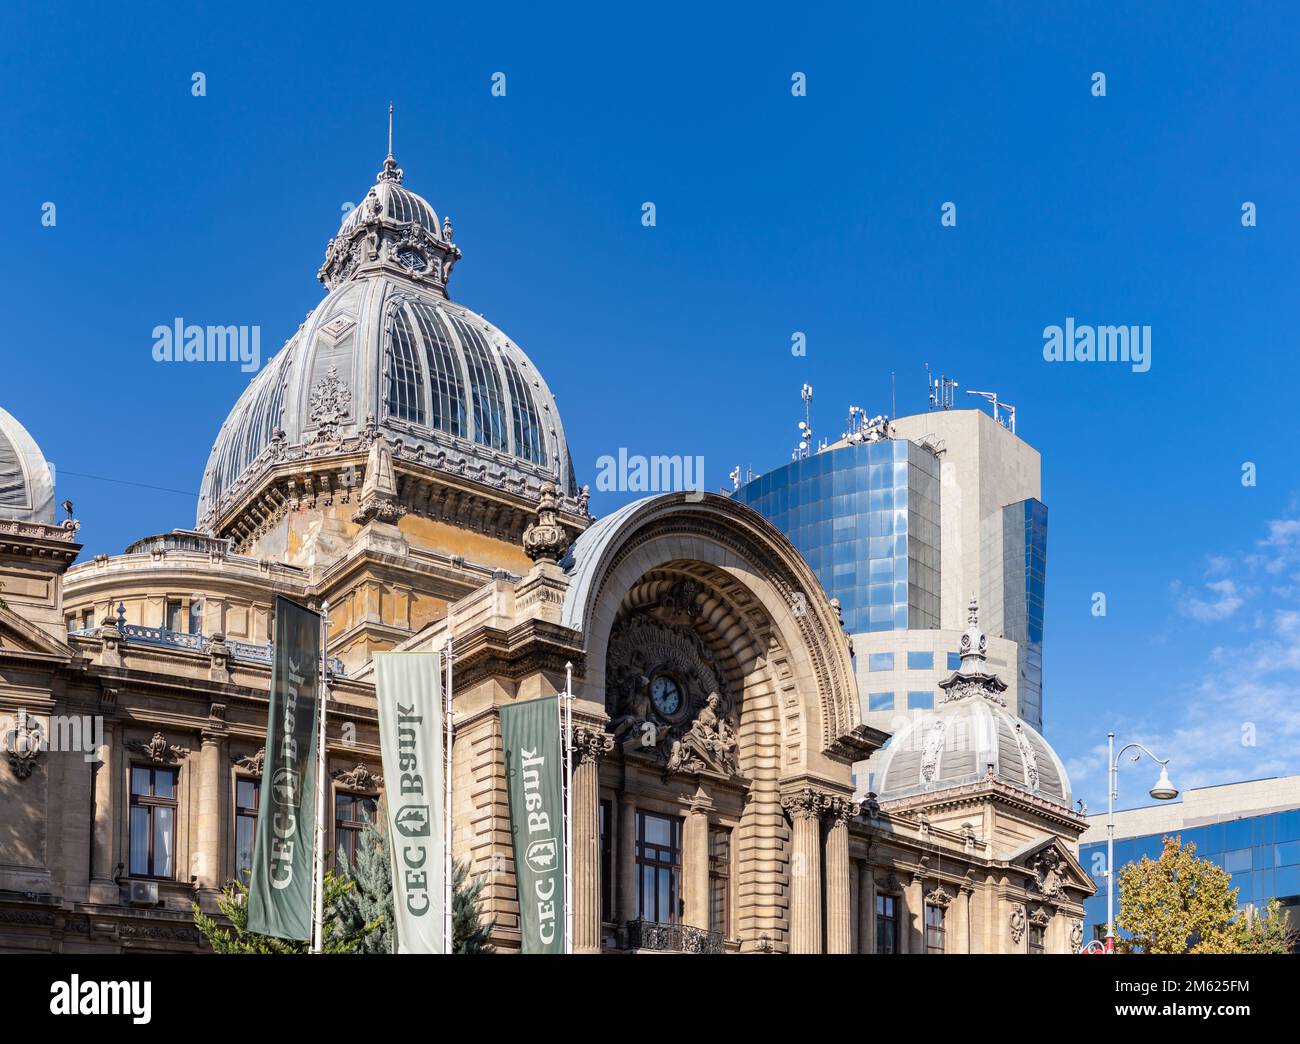 Una imagen del Palacio de los depósitos y consignas, o Palacio de la CEC, en Bucarest. Foto de stock